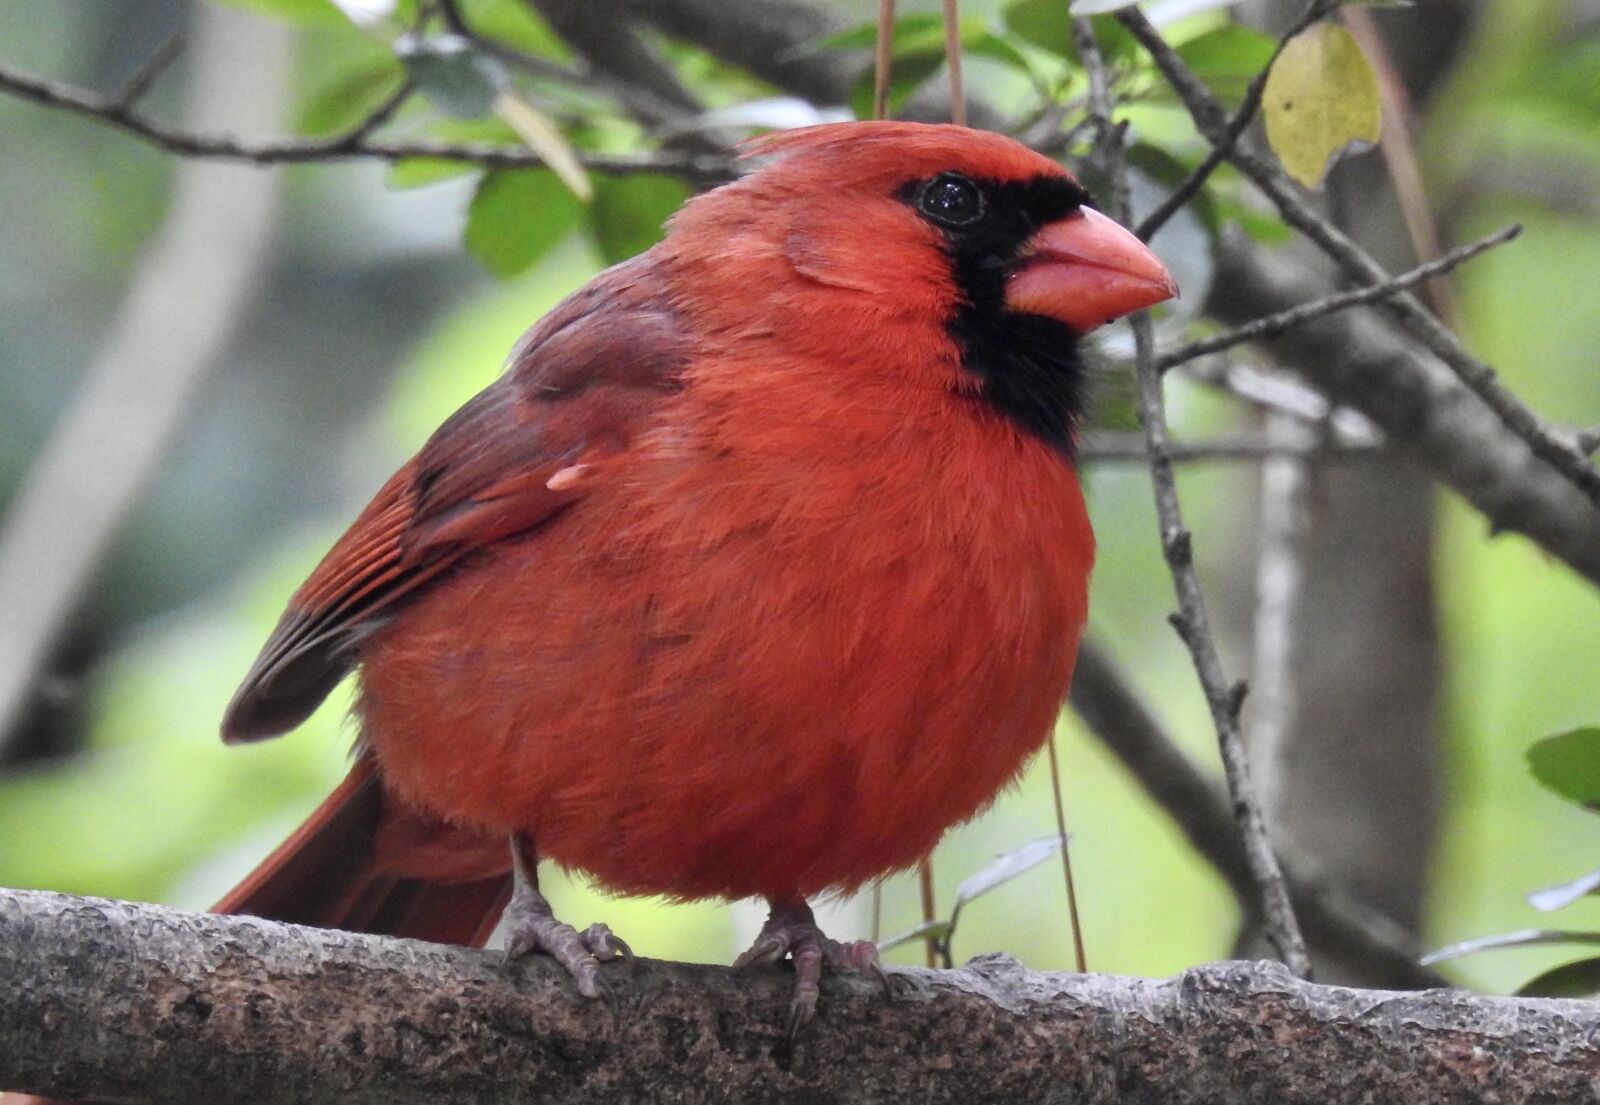 Nikon Coolpix P900 sample photo. Bird, cardinal, red photography